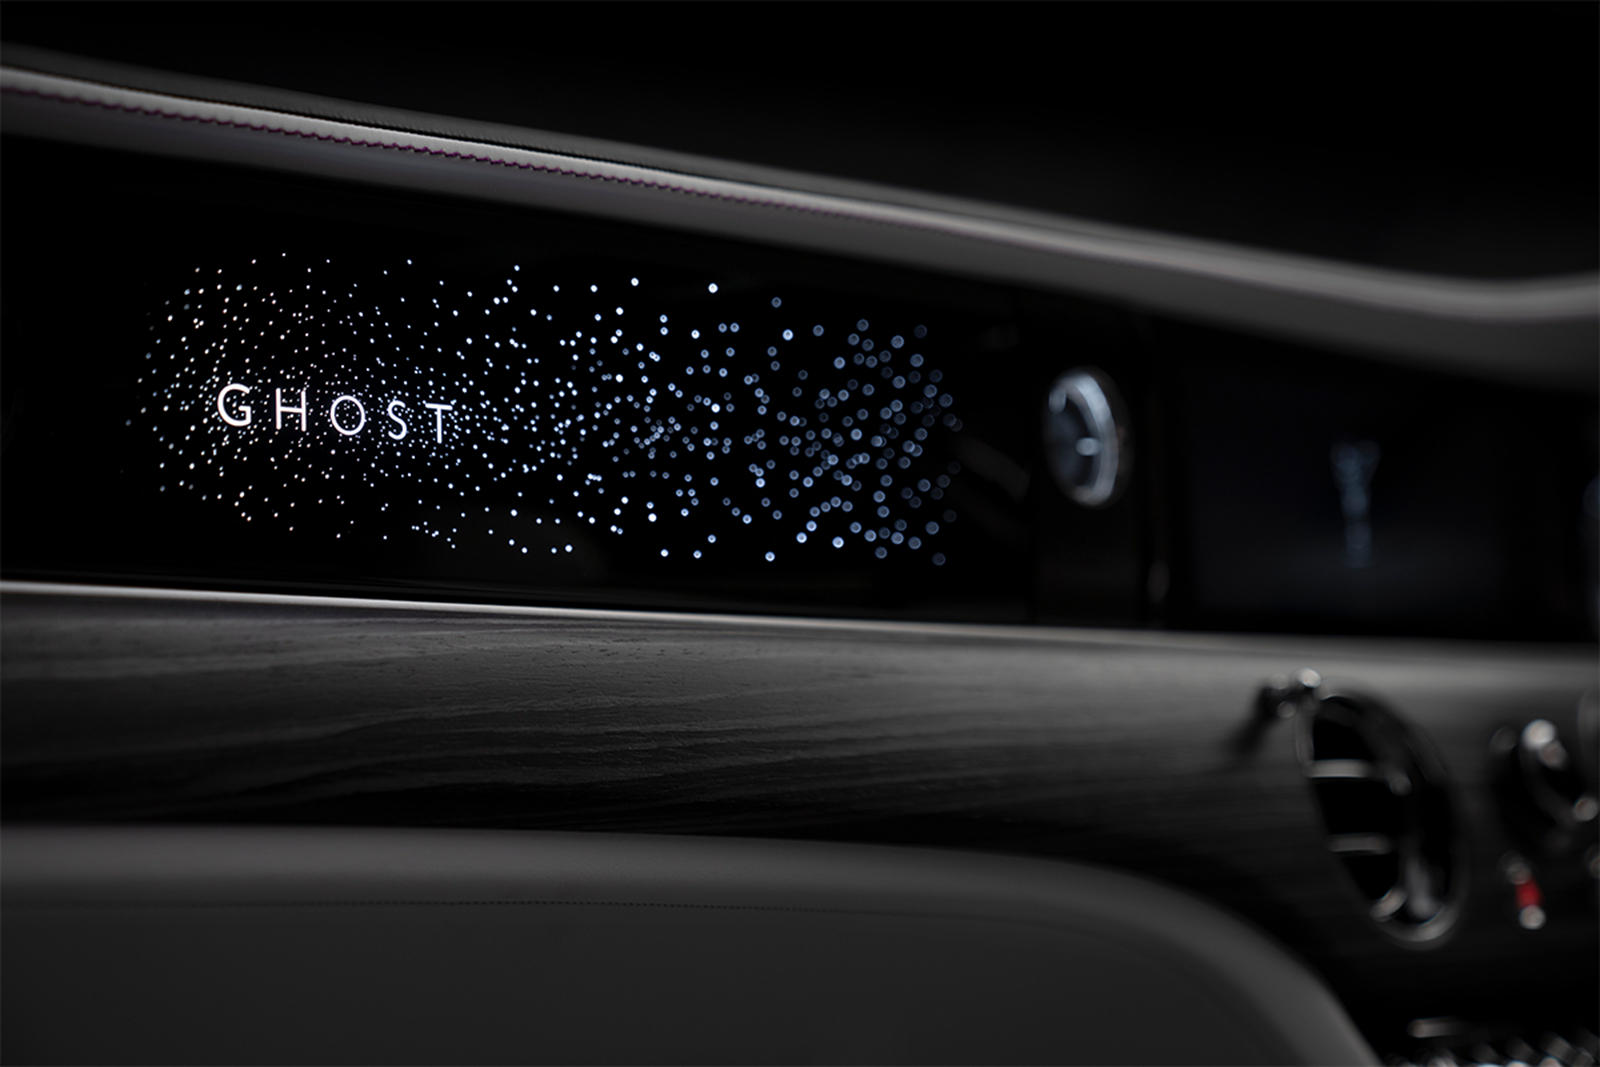 Завтра наконец будет представлен новый Rolls-Royce Ghost, после серии тизеров от люксового бренда, один из которых демонстрирует его потрясающую подсветку приборной панели, и еще один показывает очертания автомобиля.